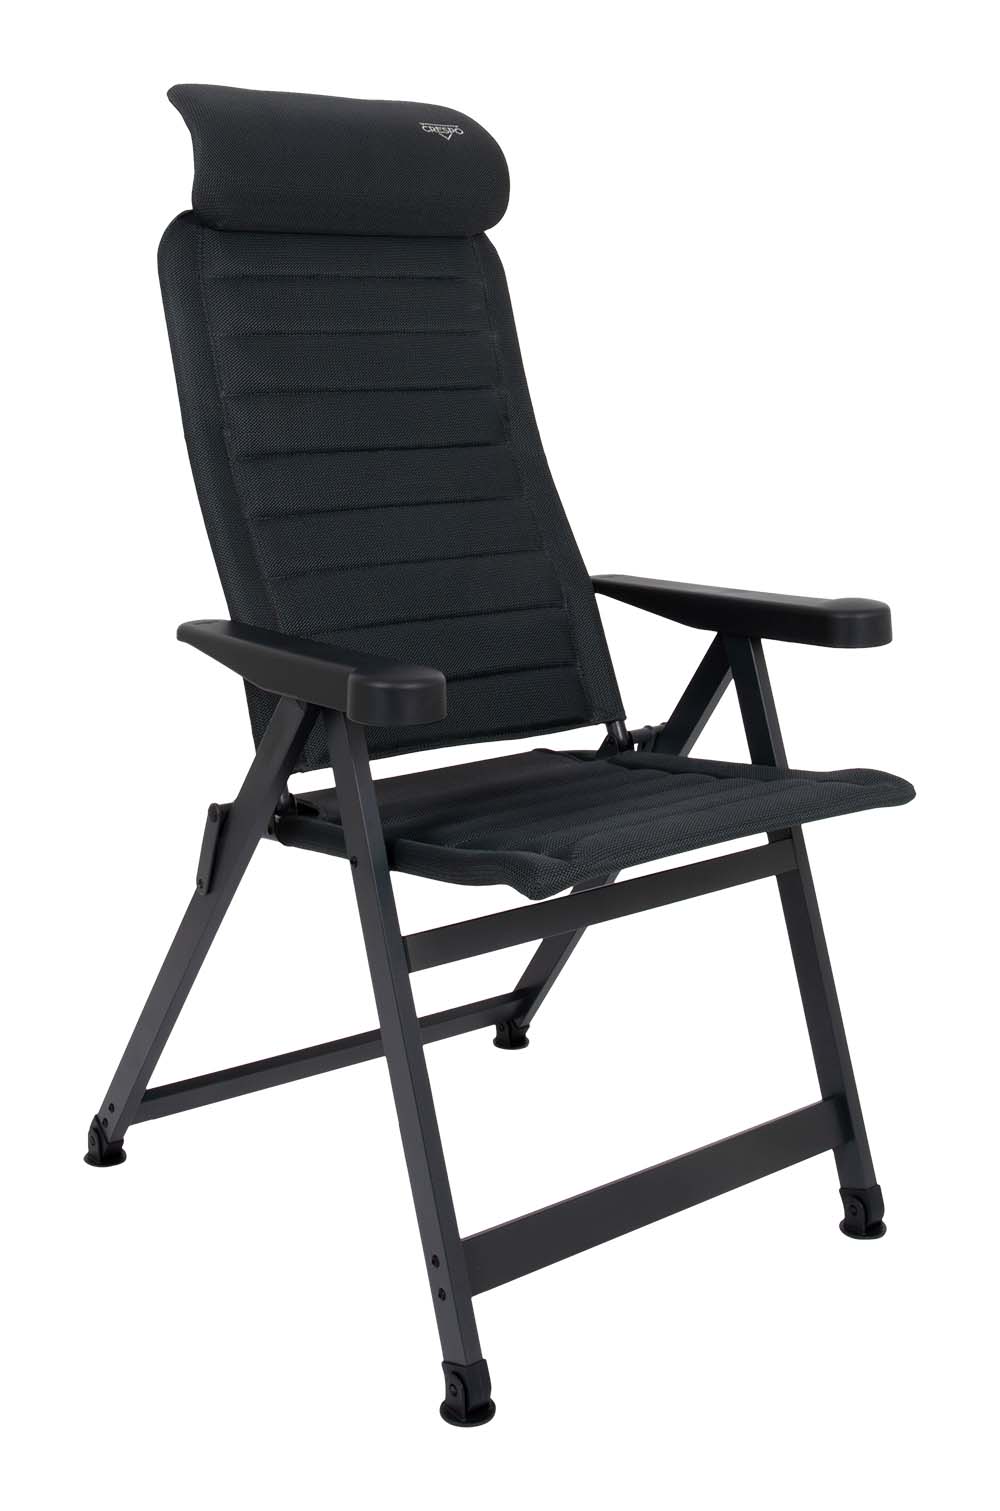 1149525 Een ergonomische in 7 standen verstelbare standenstoel. De stoel is uitgevoerd in een vierkant frame en voorzien van stabilisatievoeten waardoor de stoel altijd zeer stevig staat. Daarnaast is de stoel voorzien van een verstelbare hoofdsteun. De zeer comfortabele en chique stoffering is extra luchtdoorlatend en houdt door de open celstructuur geen vocht vast. Hierdoor is de stoel veel sneller droog dan stoelen met een traditionele schuimvulling. Deze stoel heeft een extra hoge zit en een langere rugleuning. Ideaal voor de langere mens. Biedt maximaal comfort door de in 7 standen verstelbare rugleuning. Zowel de rugleuning als de armleggers zijn ergonomisch gevormd. De stoel is voorzien van een geanodiseerd H-frame voor extra stabiliteit en stevigheid.